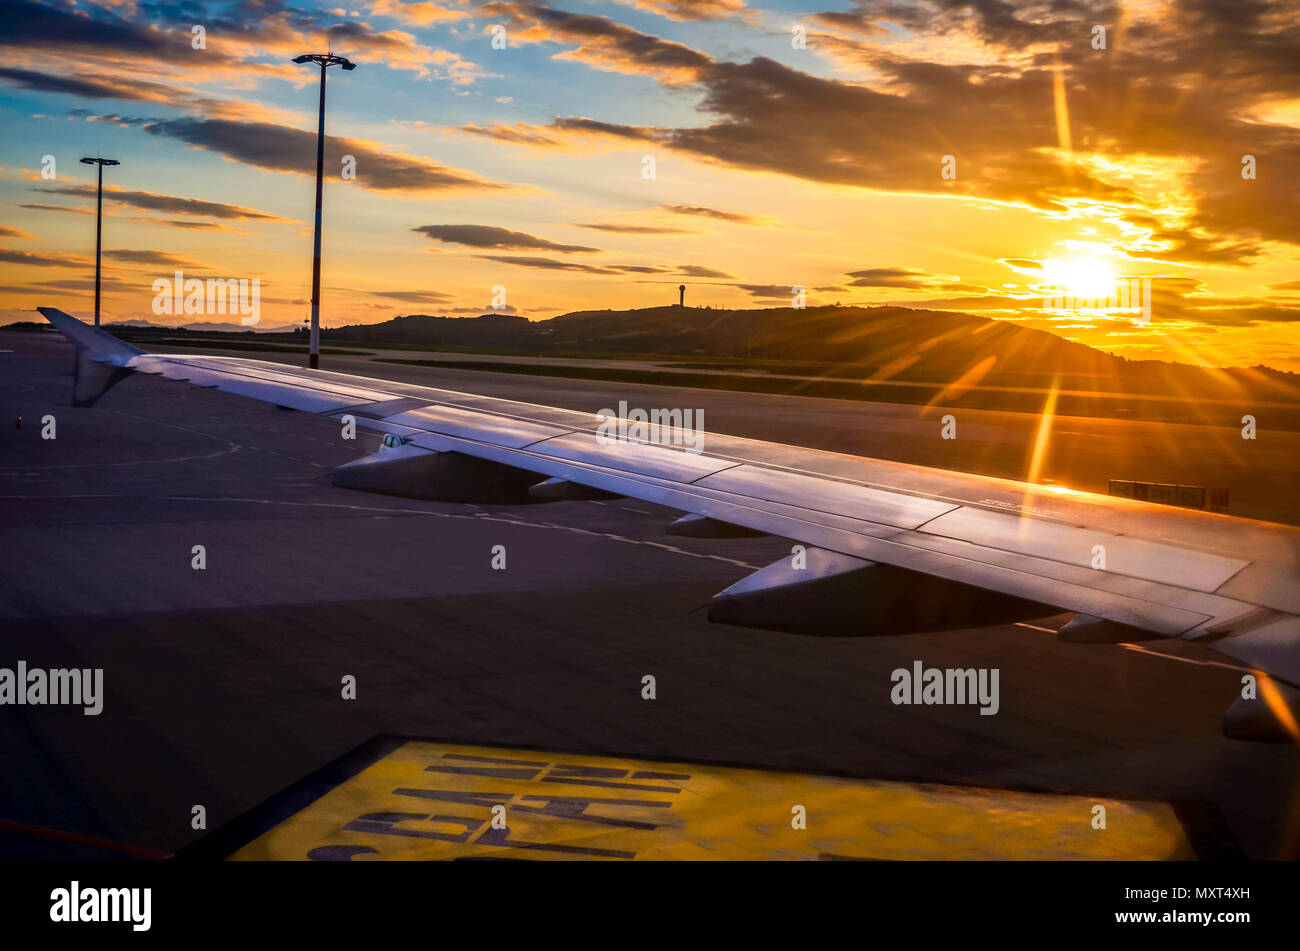 Die Tragfläche des Flugzeugs, während mit wunderschönen Sonnenaufgang Licht angelandet worden. Stockfoto